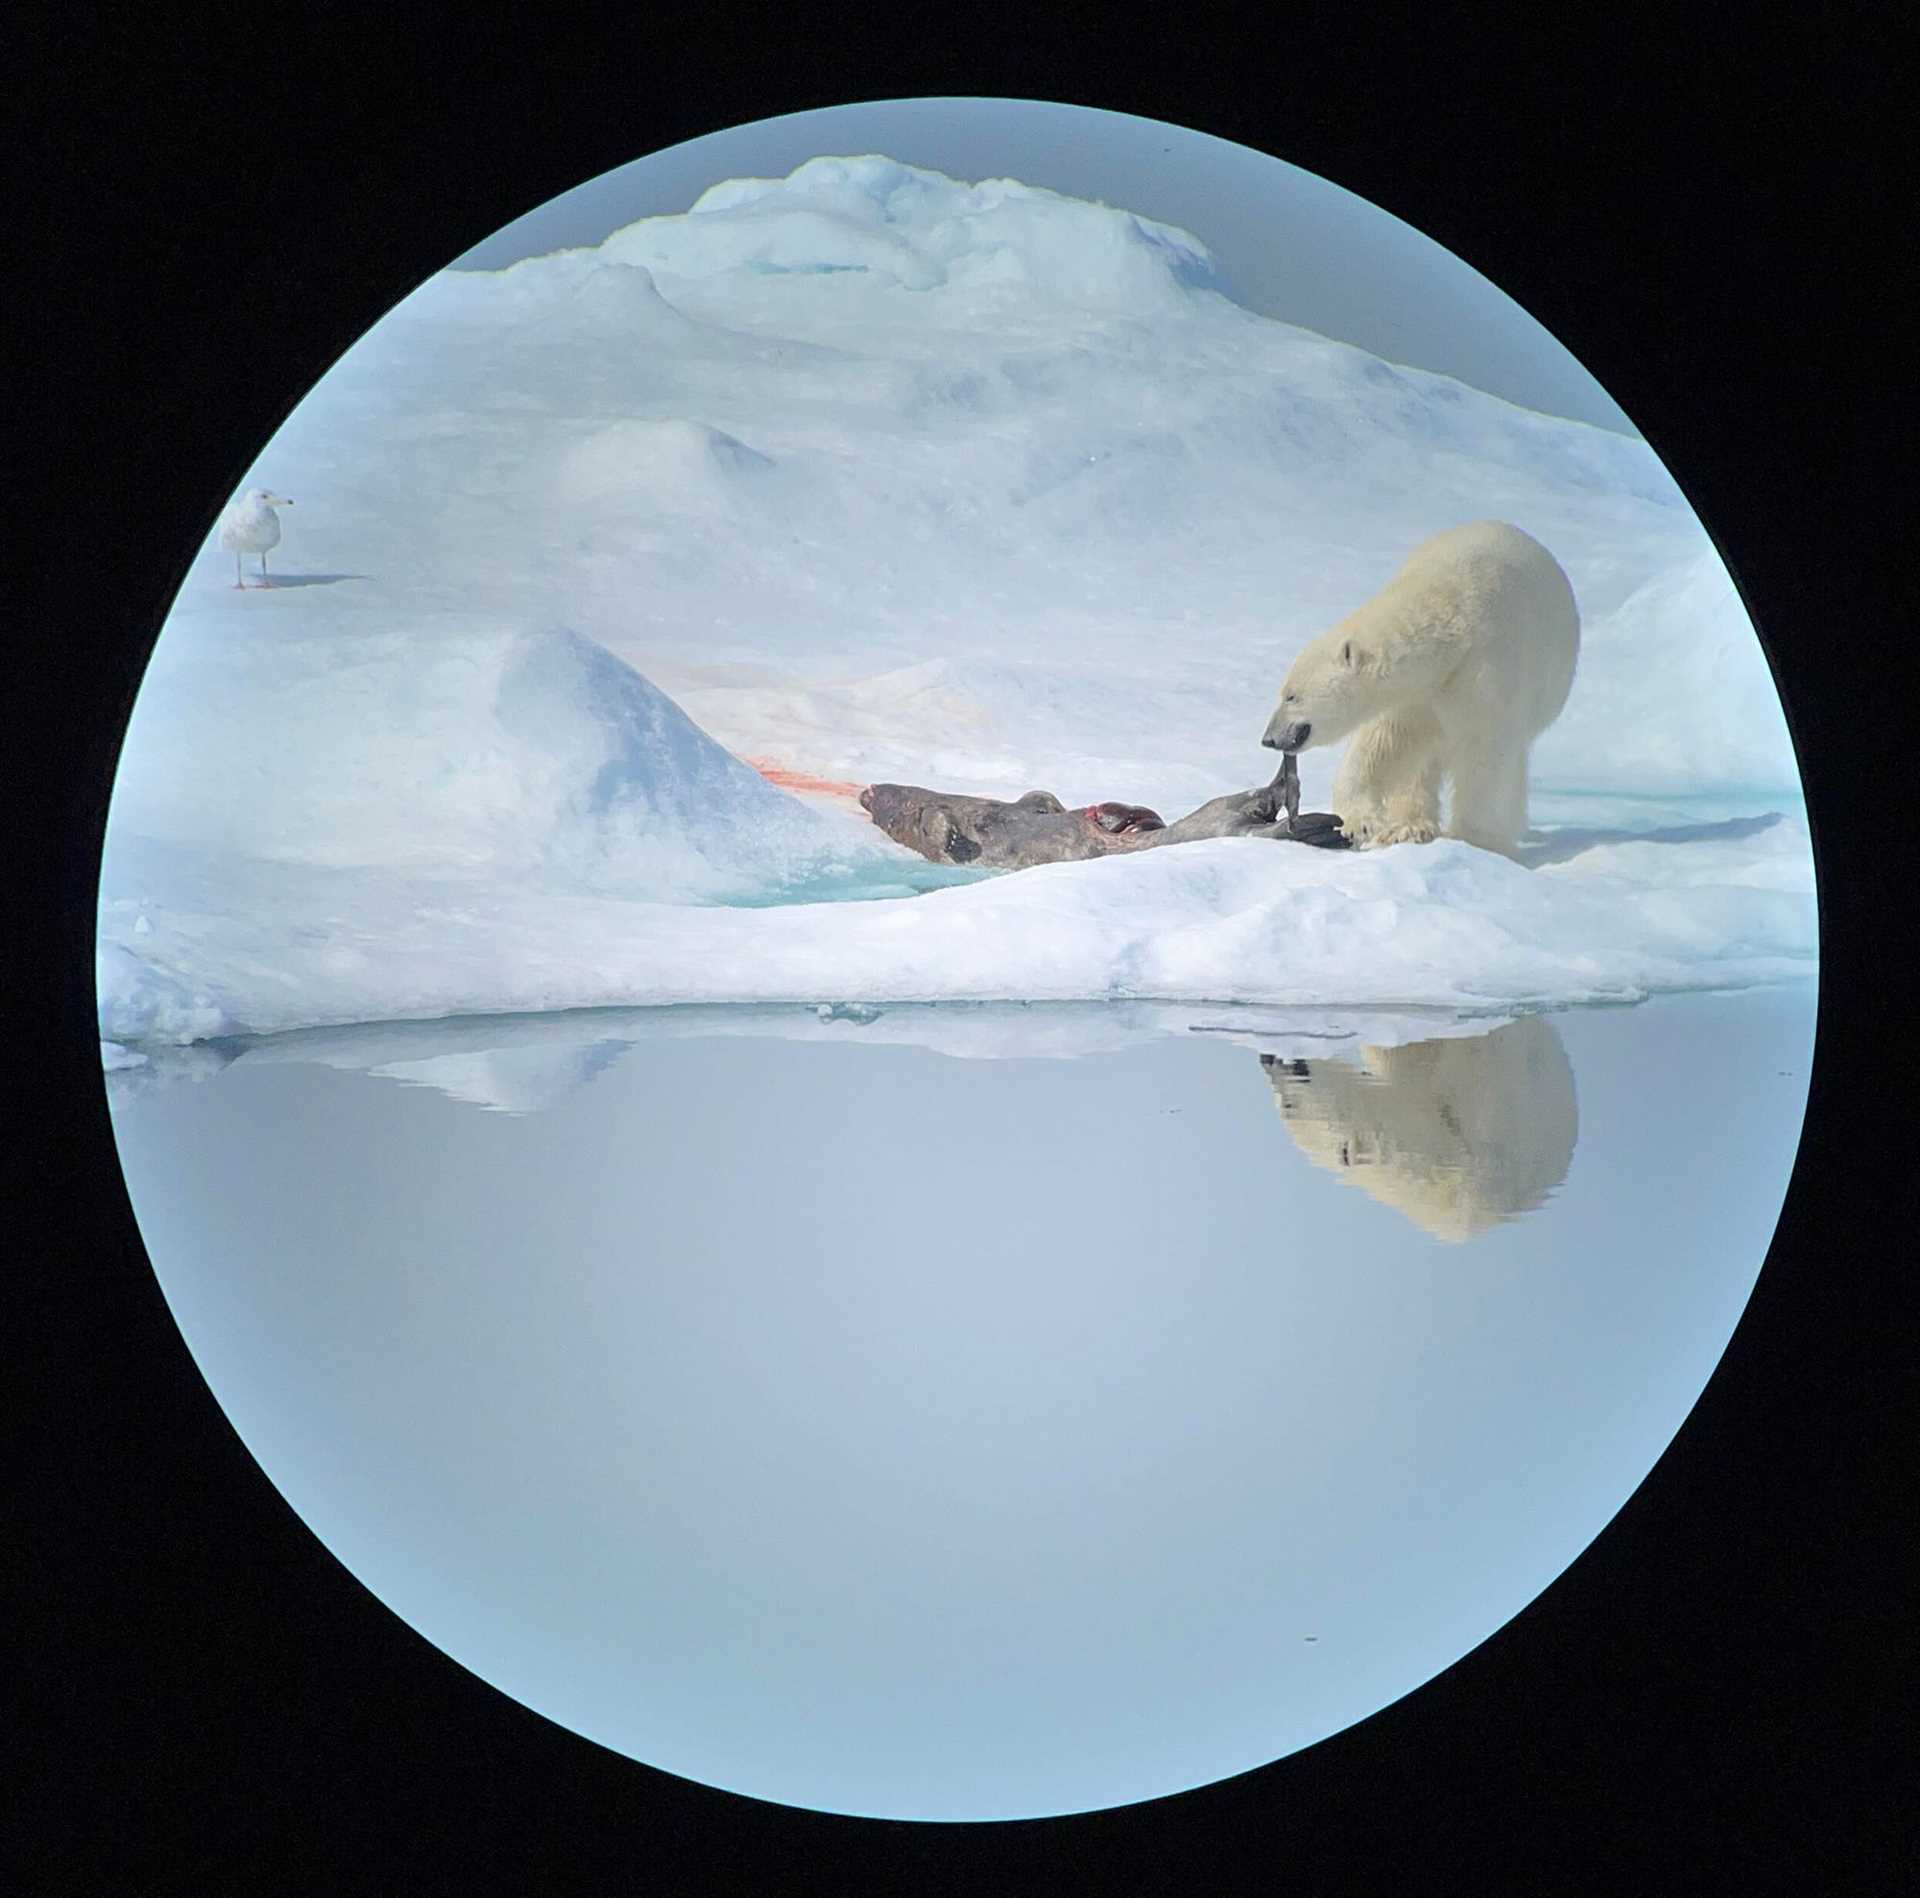 polar bear eating a seal carcass